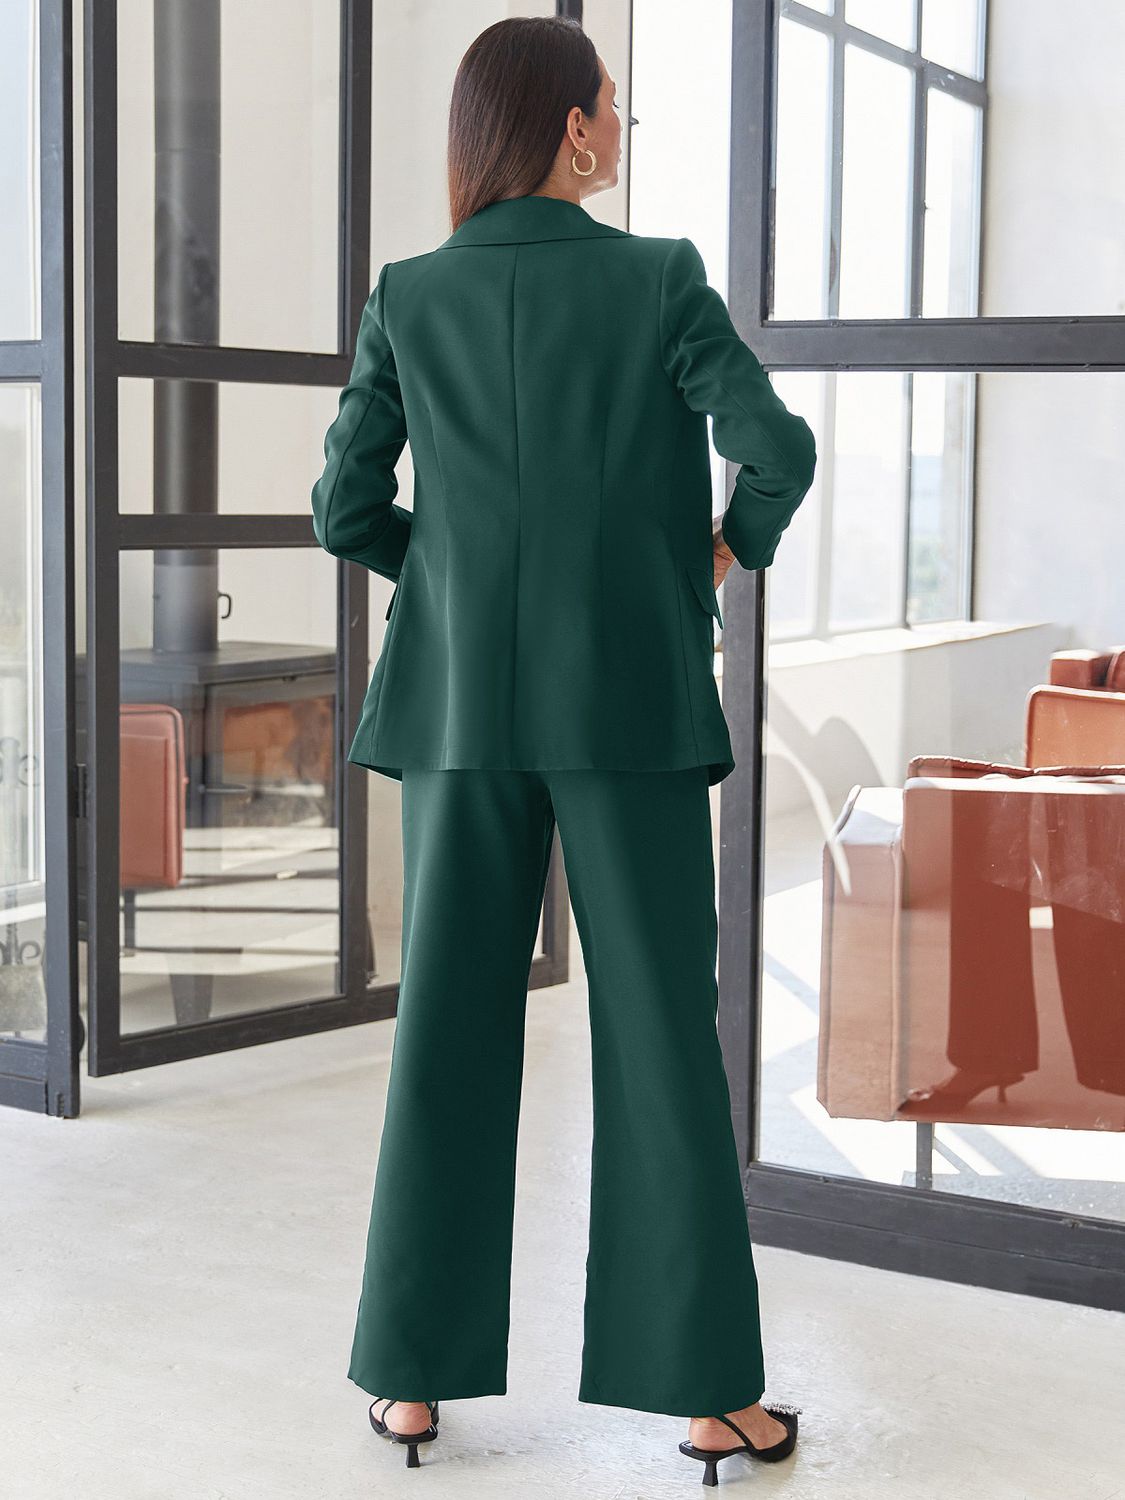 Женский брючный костюм в деловом стиле темно-зеленый - фото